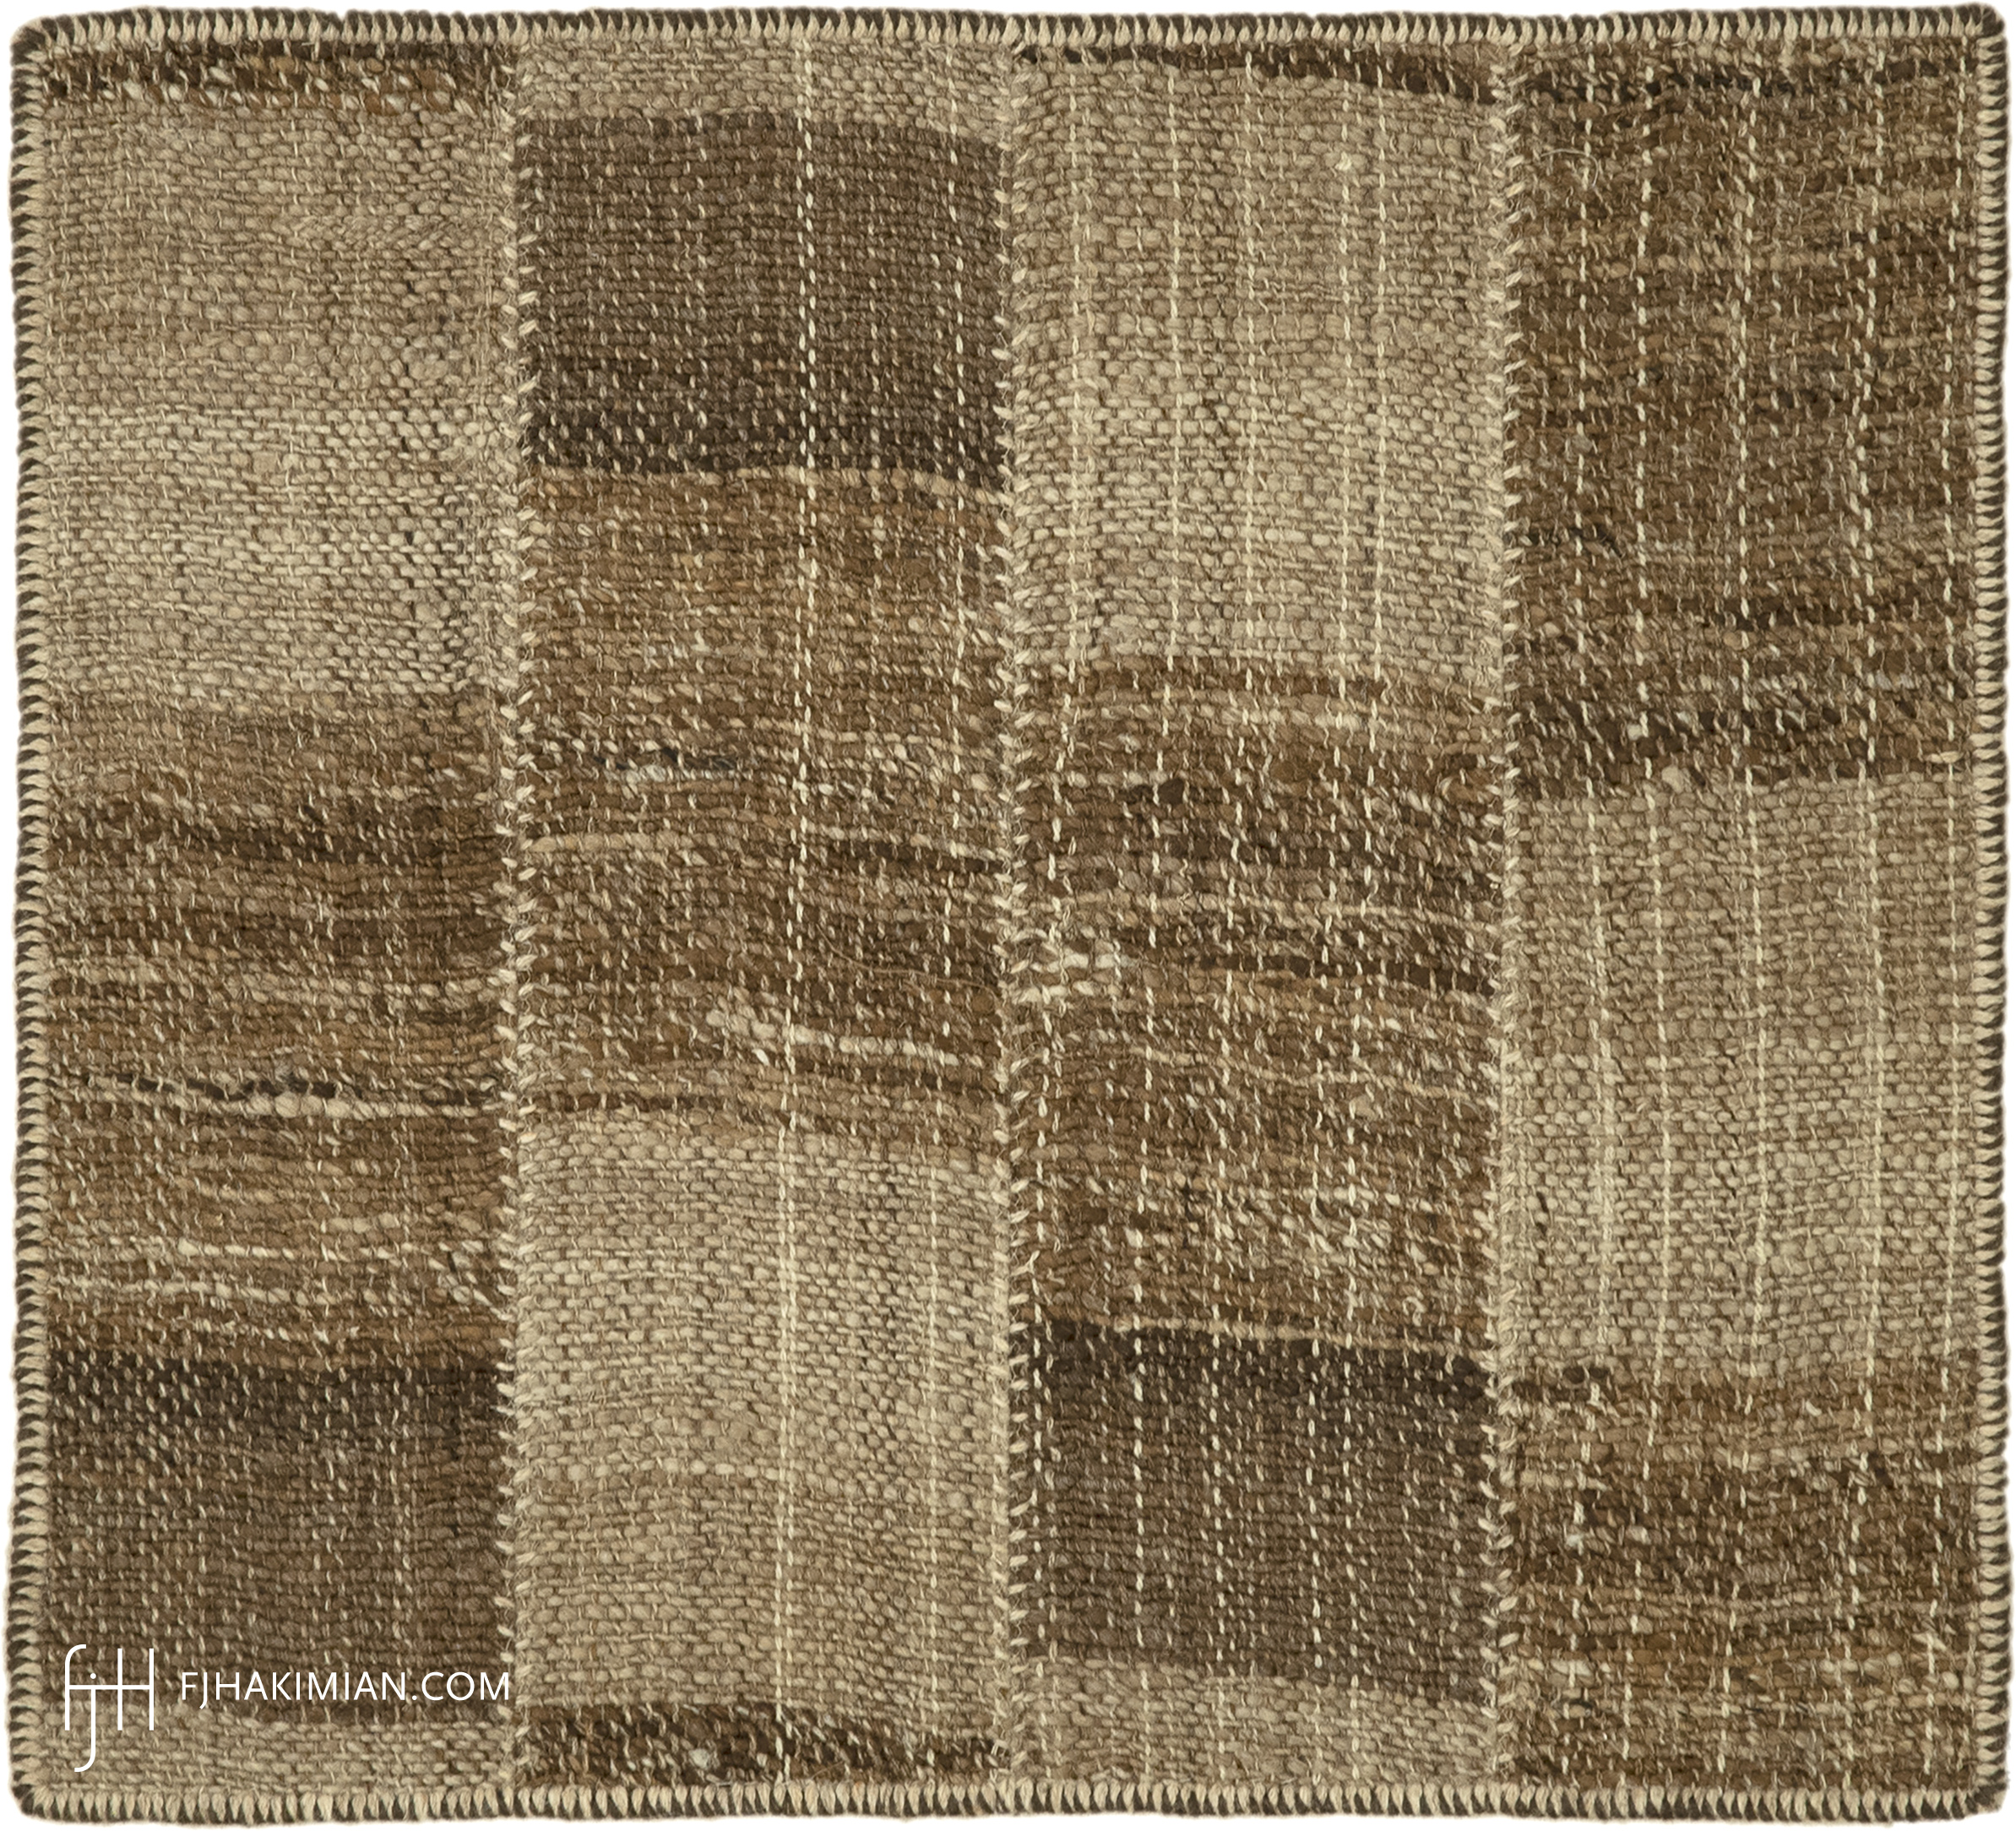 FJ Hakimian | 77169 | Custom Carpet